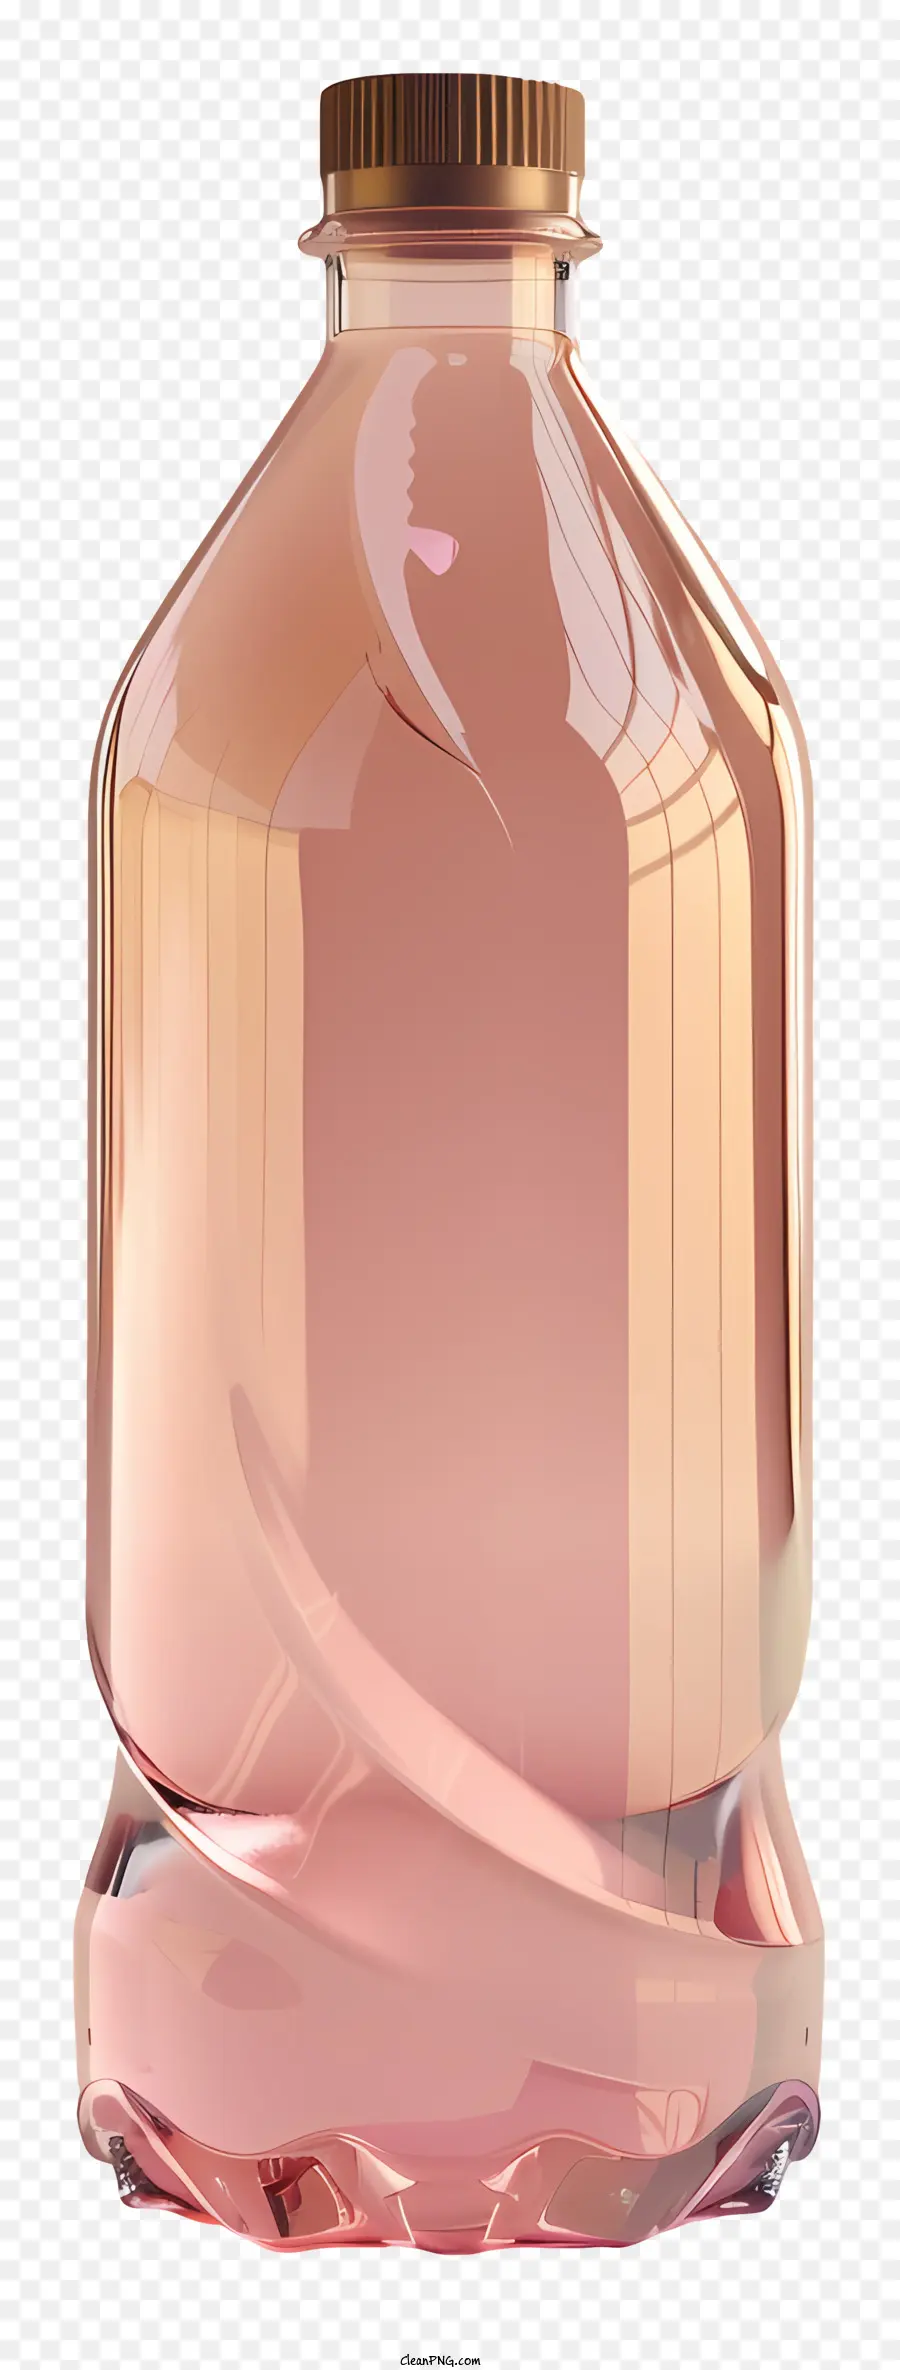 chai nhựa - Màu hồng, chai không được gắn nhãn với nội dung nắp mở không rõ